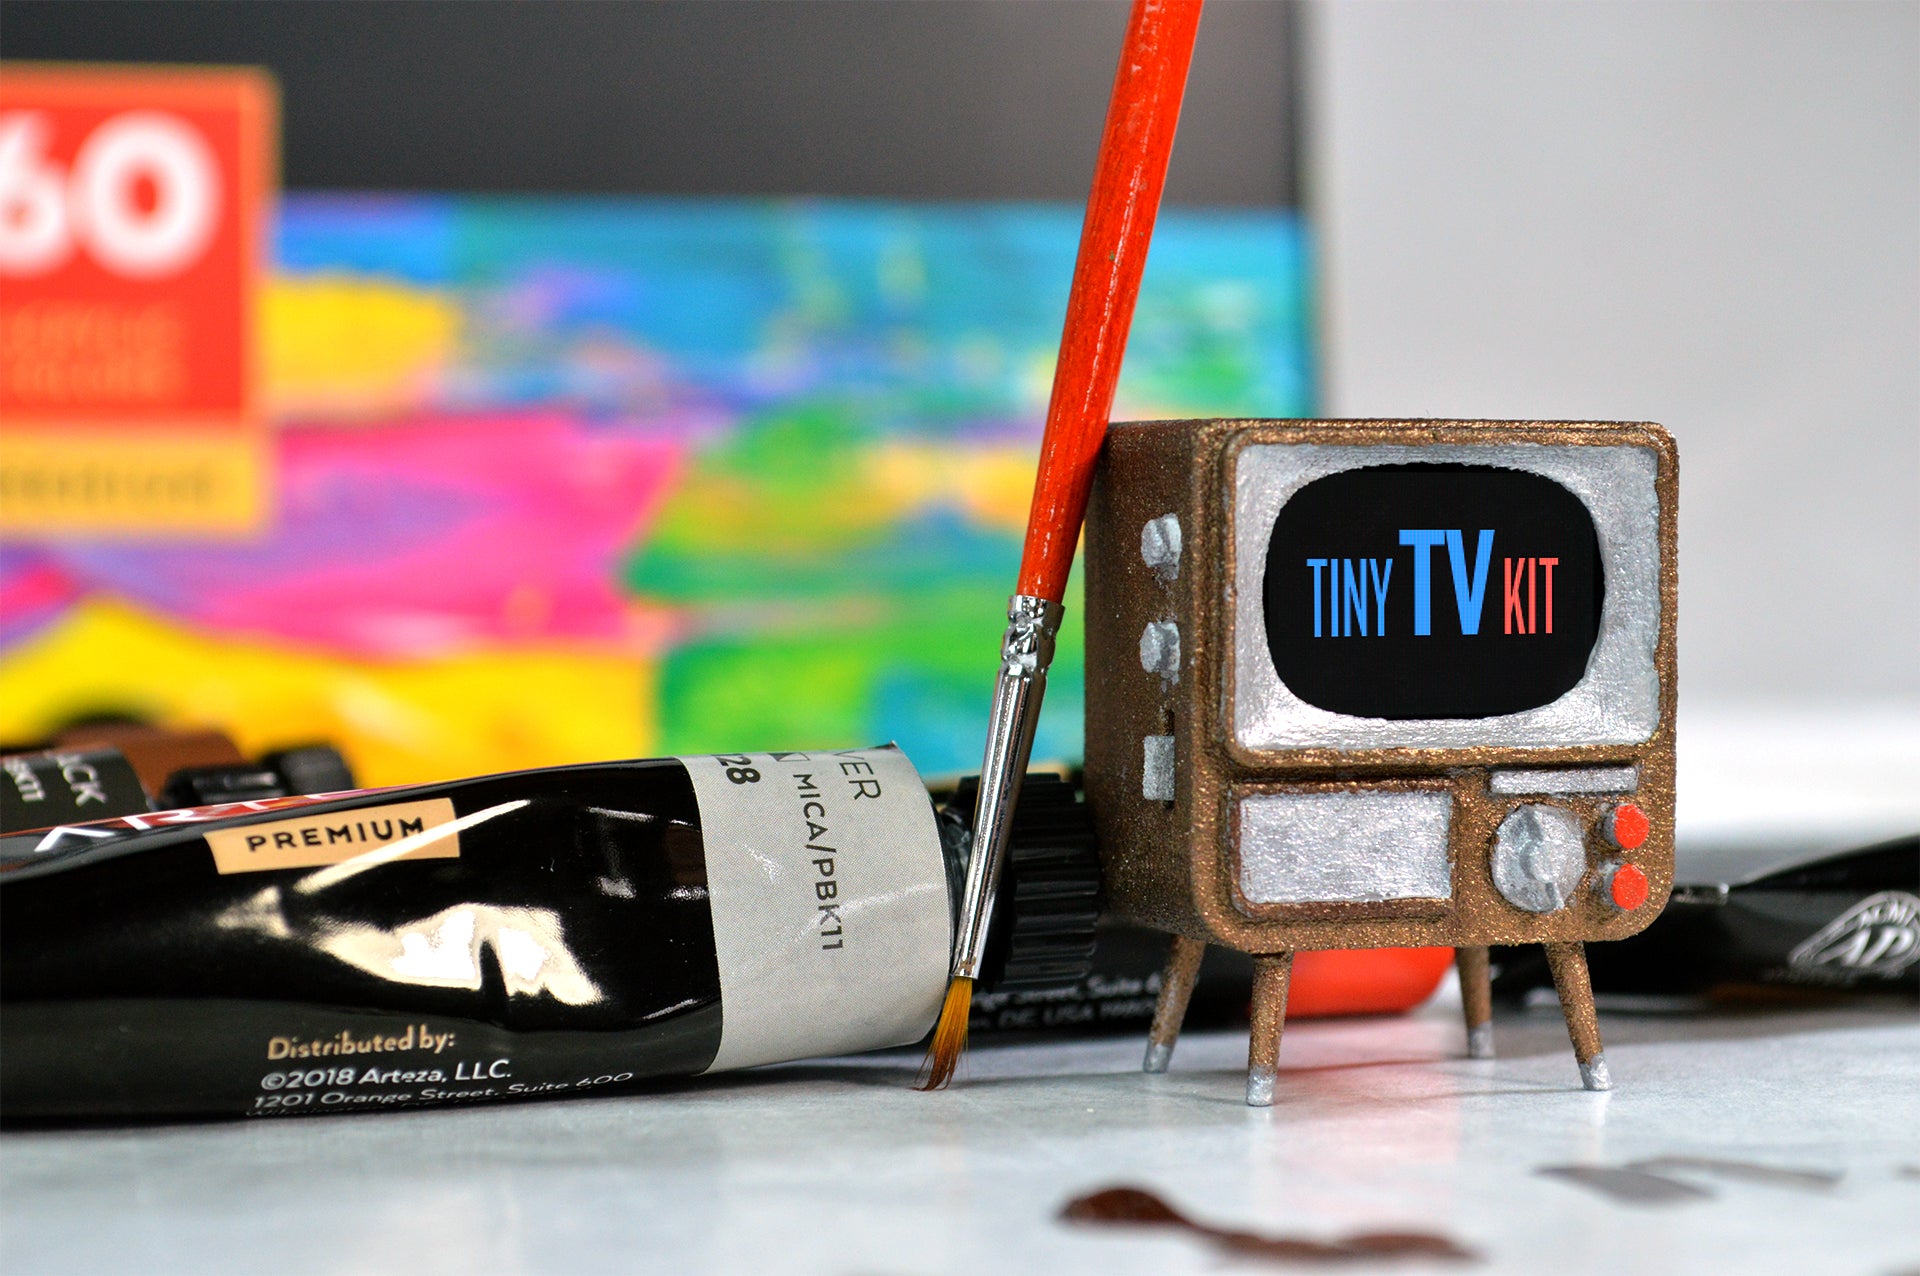 Customizing your DIY TinyTV Kit